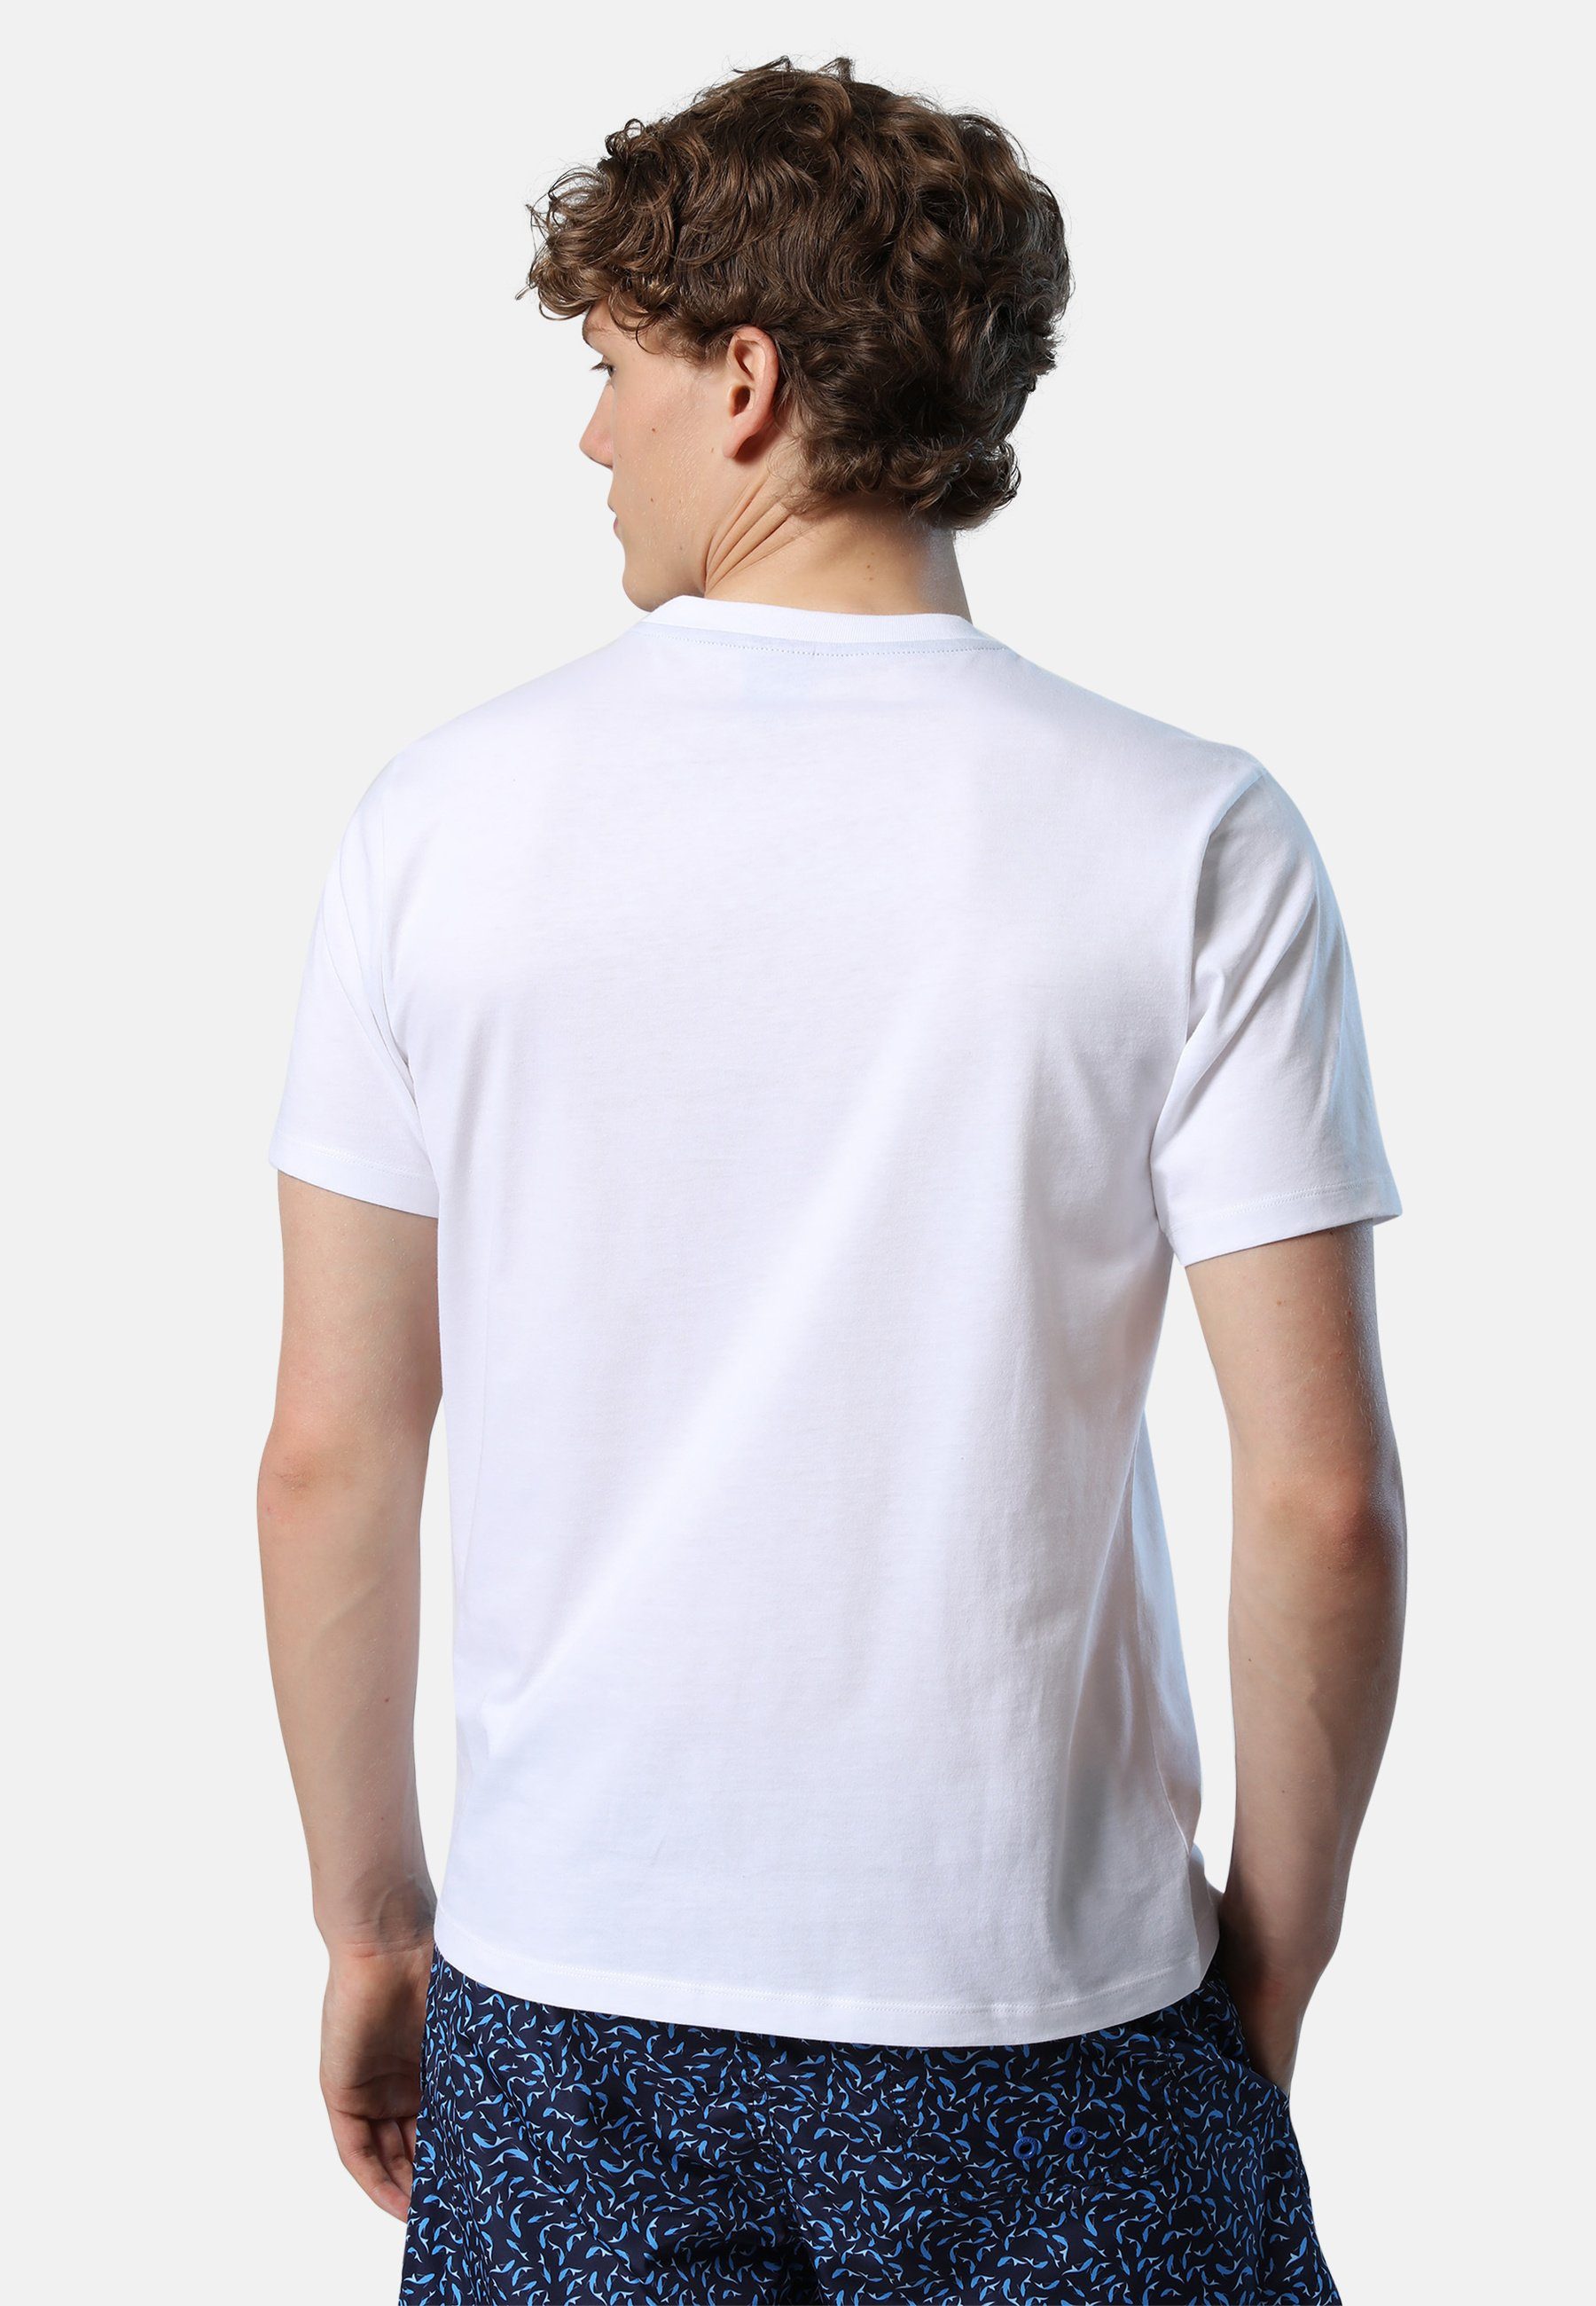 T-Shirt mit North Brustaufdruck weiss T-Shirt Ton-in-Ton-Nähte Sails